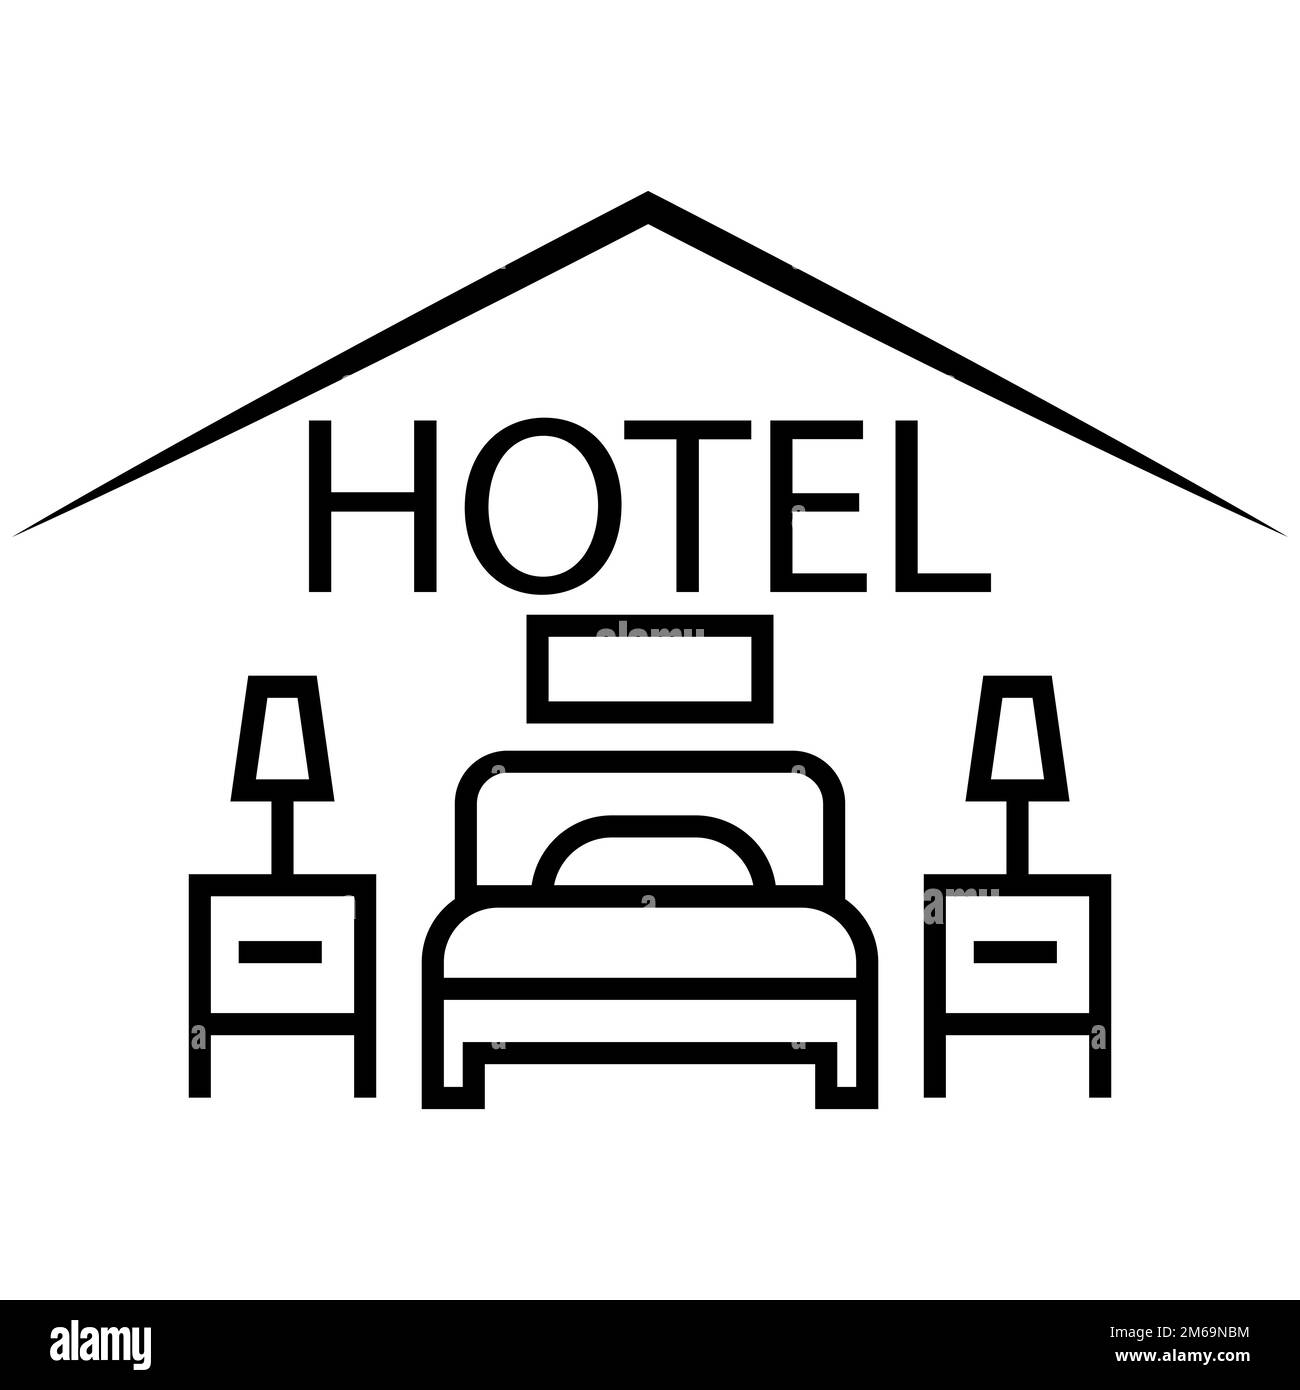 Hotel Ikone Vector, Zimmer Tourismus Ferienhaus, Piktogramm Illustration Reise Stock Vektor